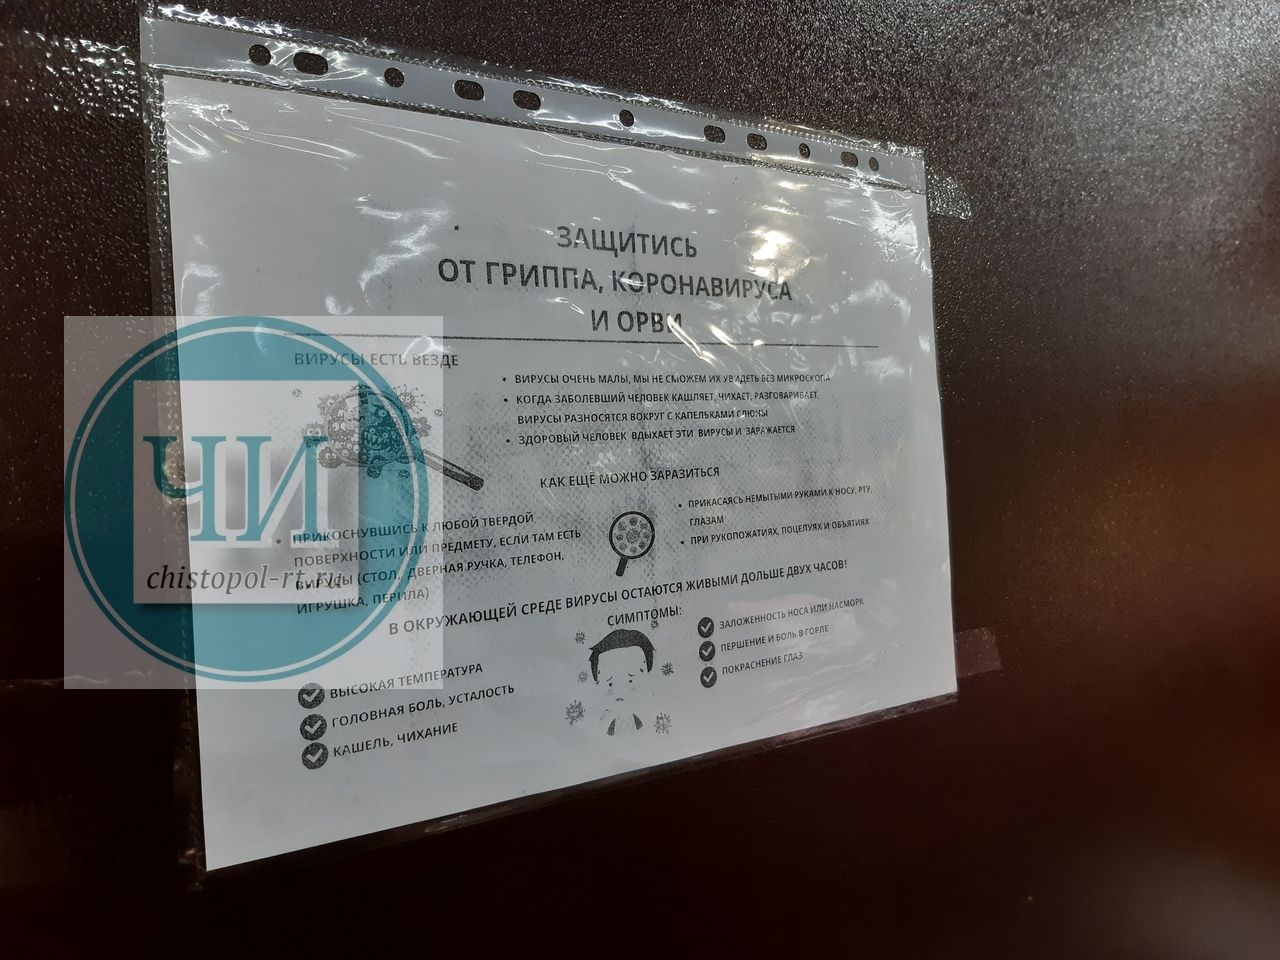 Роспотребнадзор проверил, как соблюдается особый режим в связи с коронавирусом в магазинах и автобусах в Чистополе